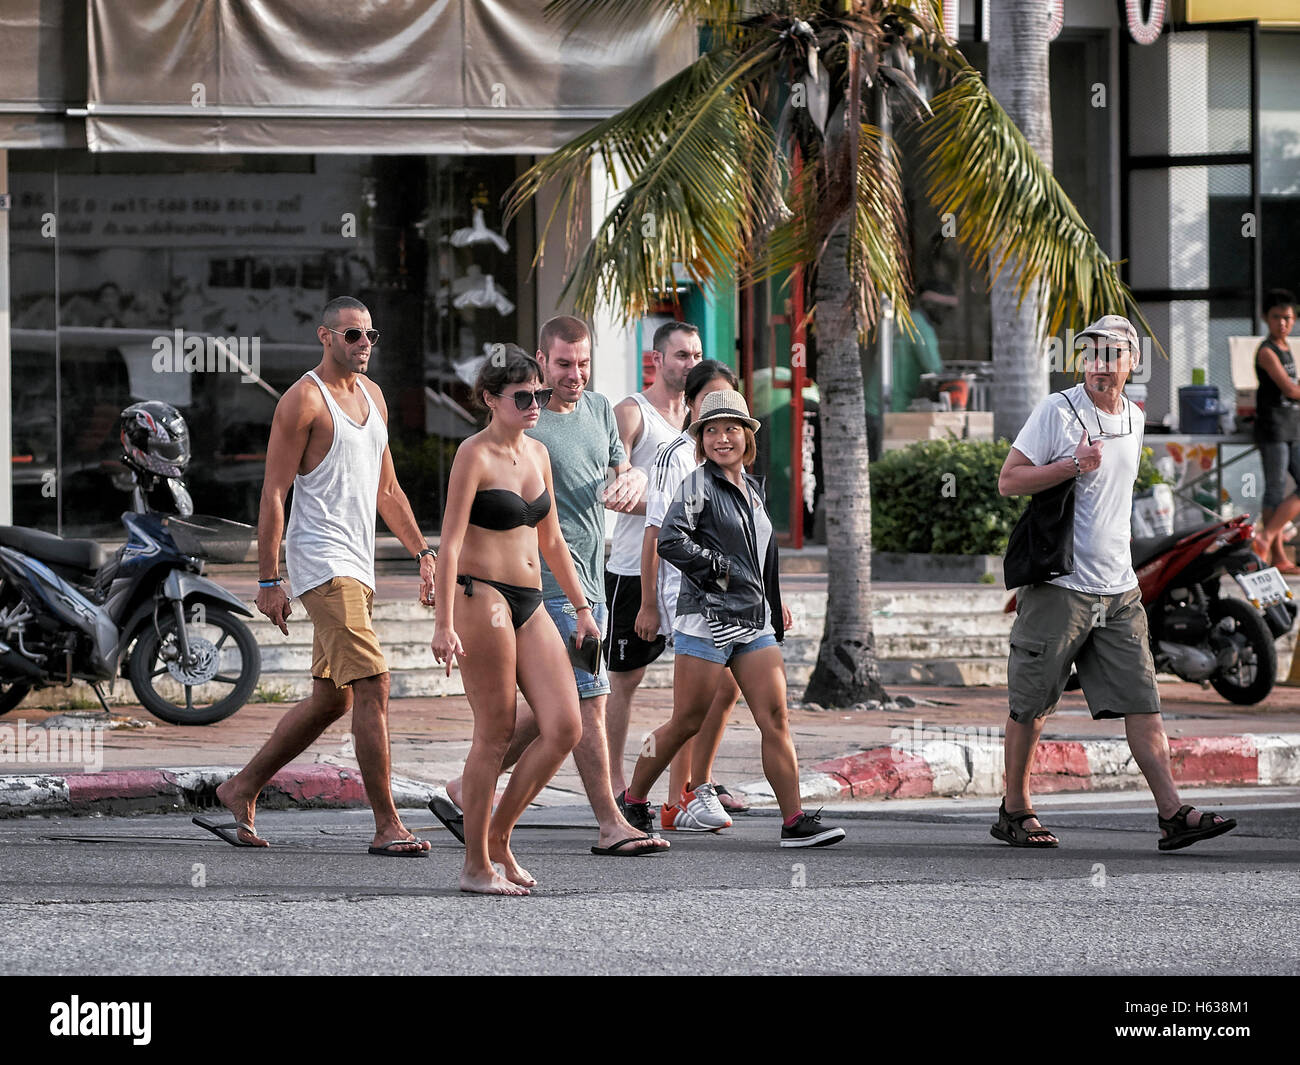 Bikinizone. Sich von der Masse abheben. Frau in Bikiniverkleidete auf der Straße, die amüsante Blicke von Zuschauern zieht. Pattaya Thailand S. E. Asien Stockfoto